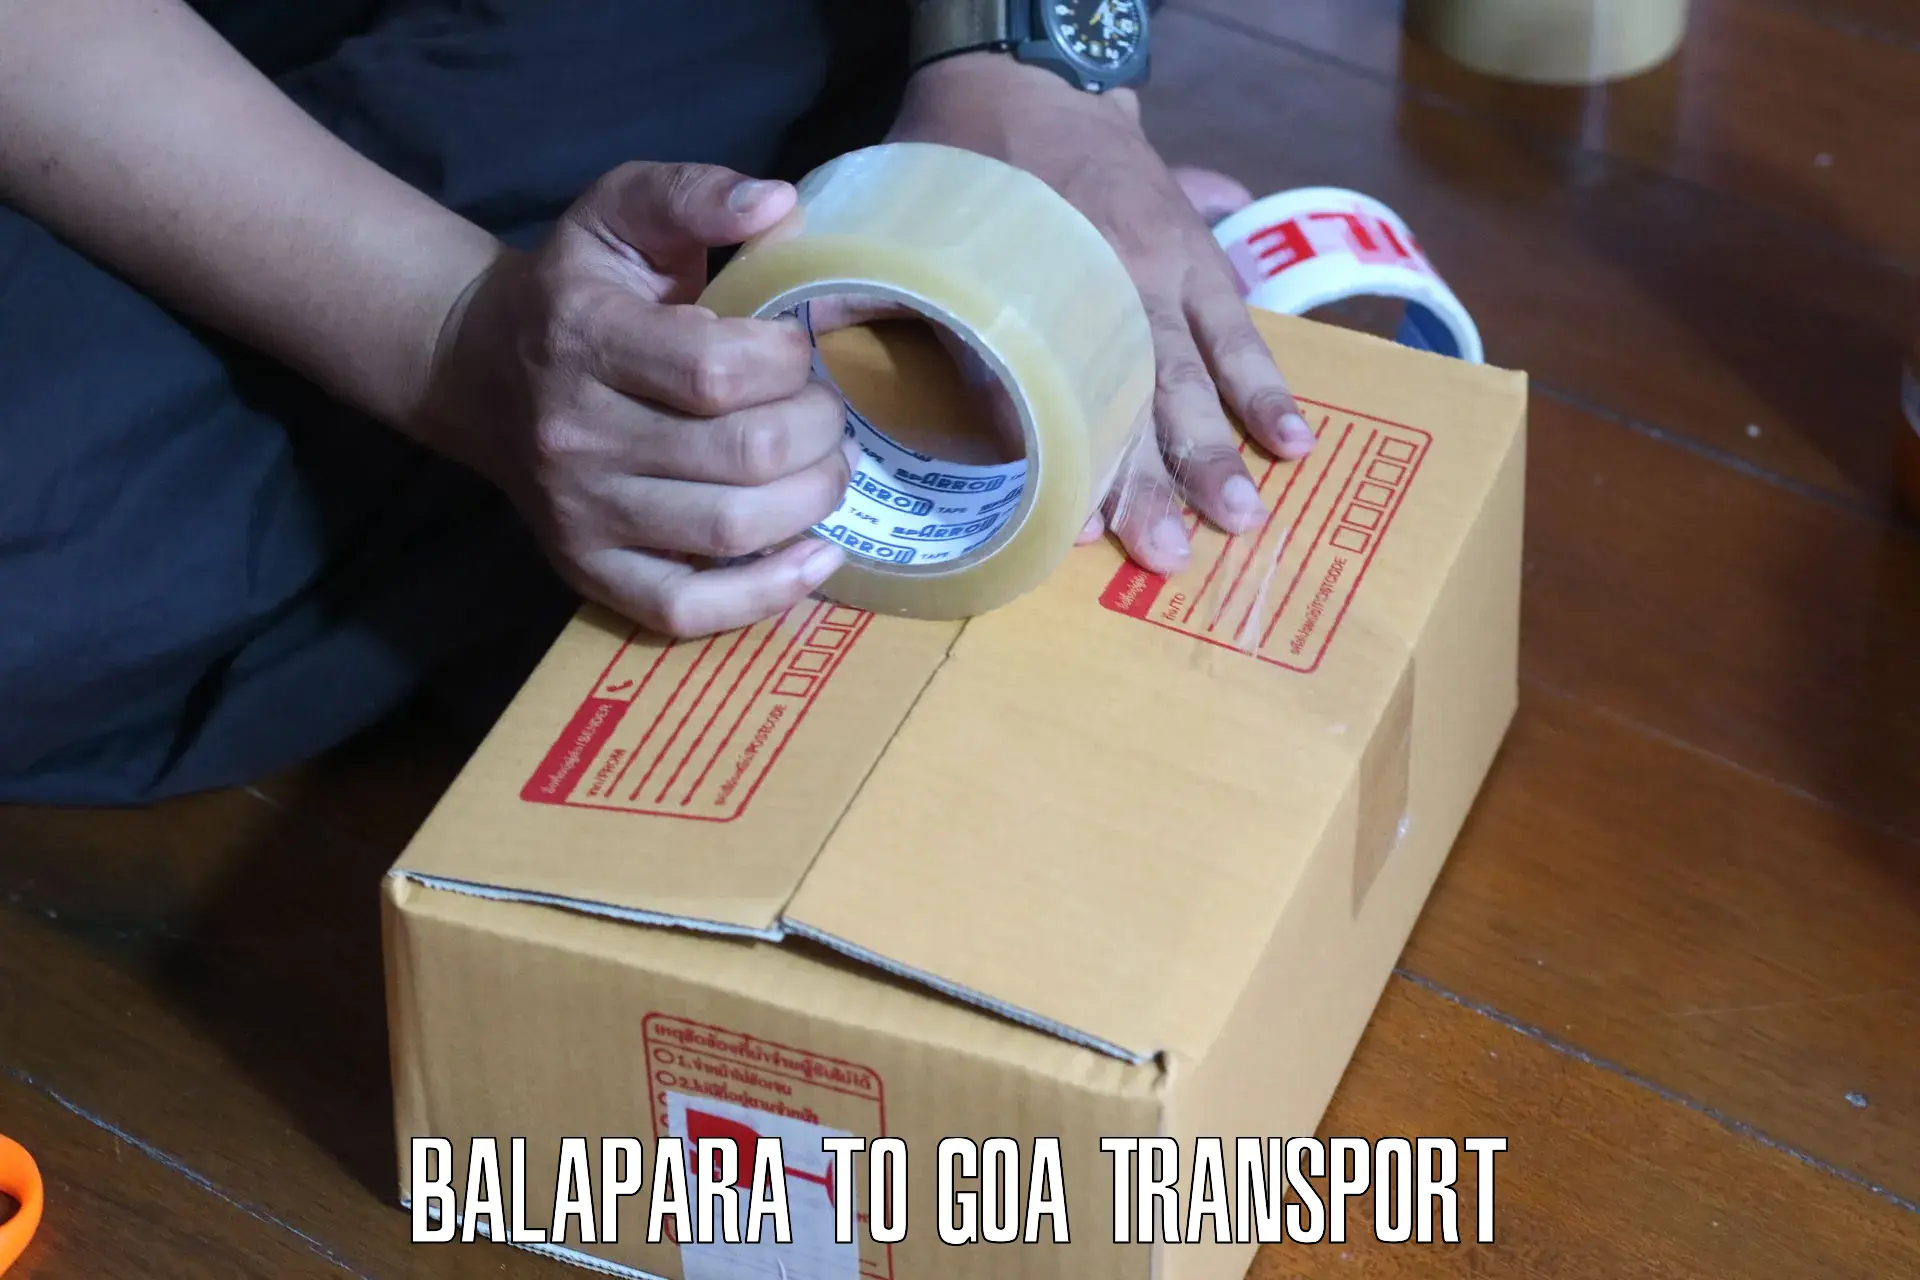 Nearby transport service Balapara to Ponda